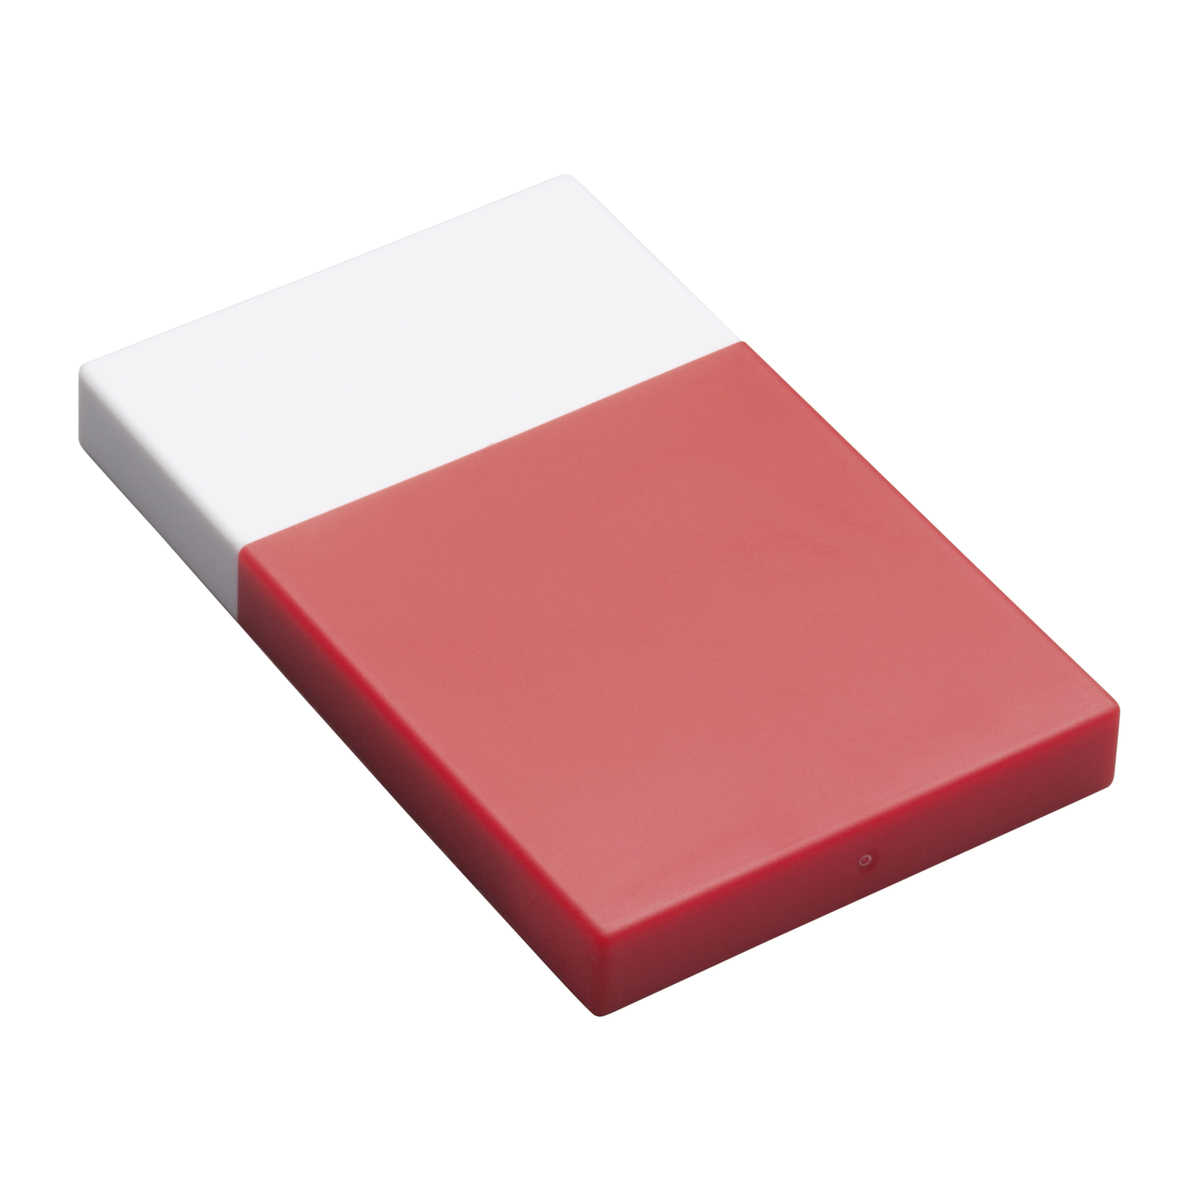 LM Visitenkartenbox REFLECTS-KELMIS WHITE RED rot, weiß, weiß / rot